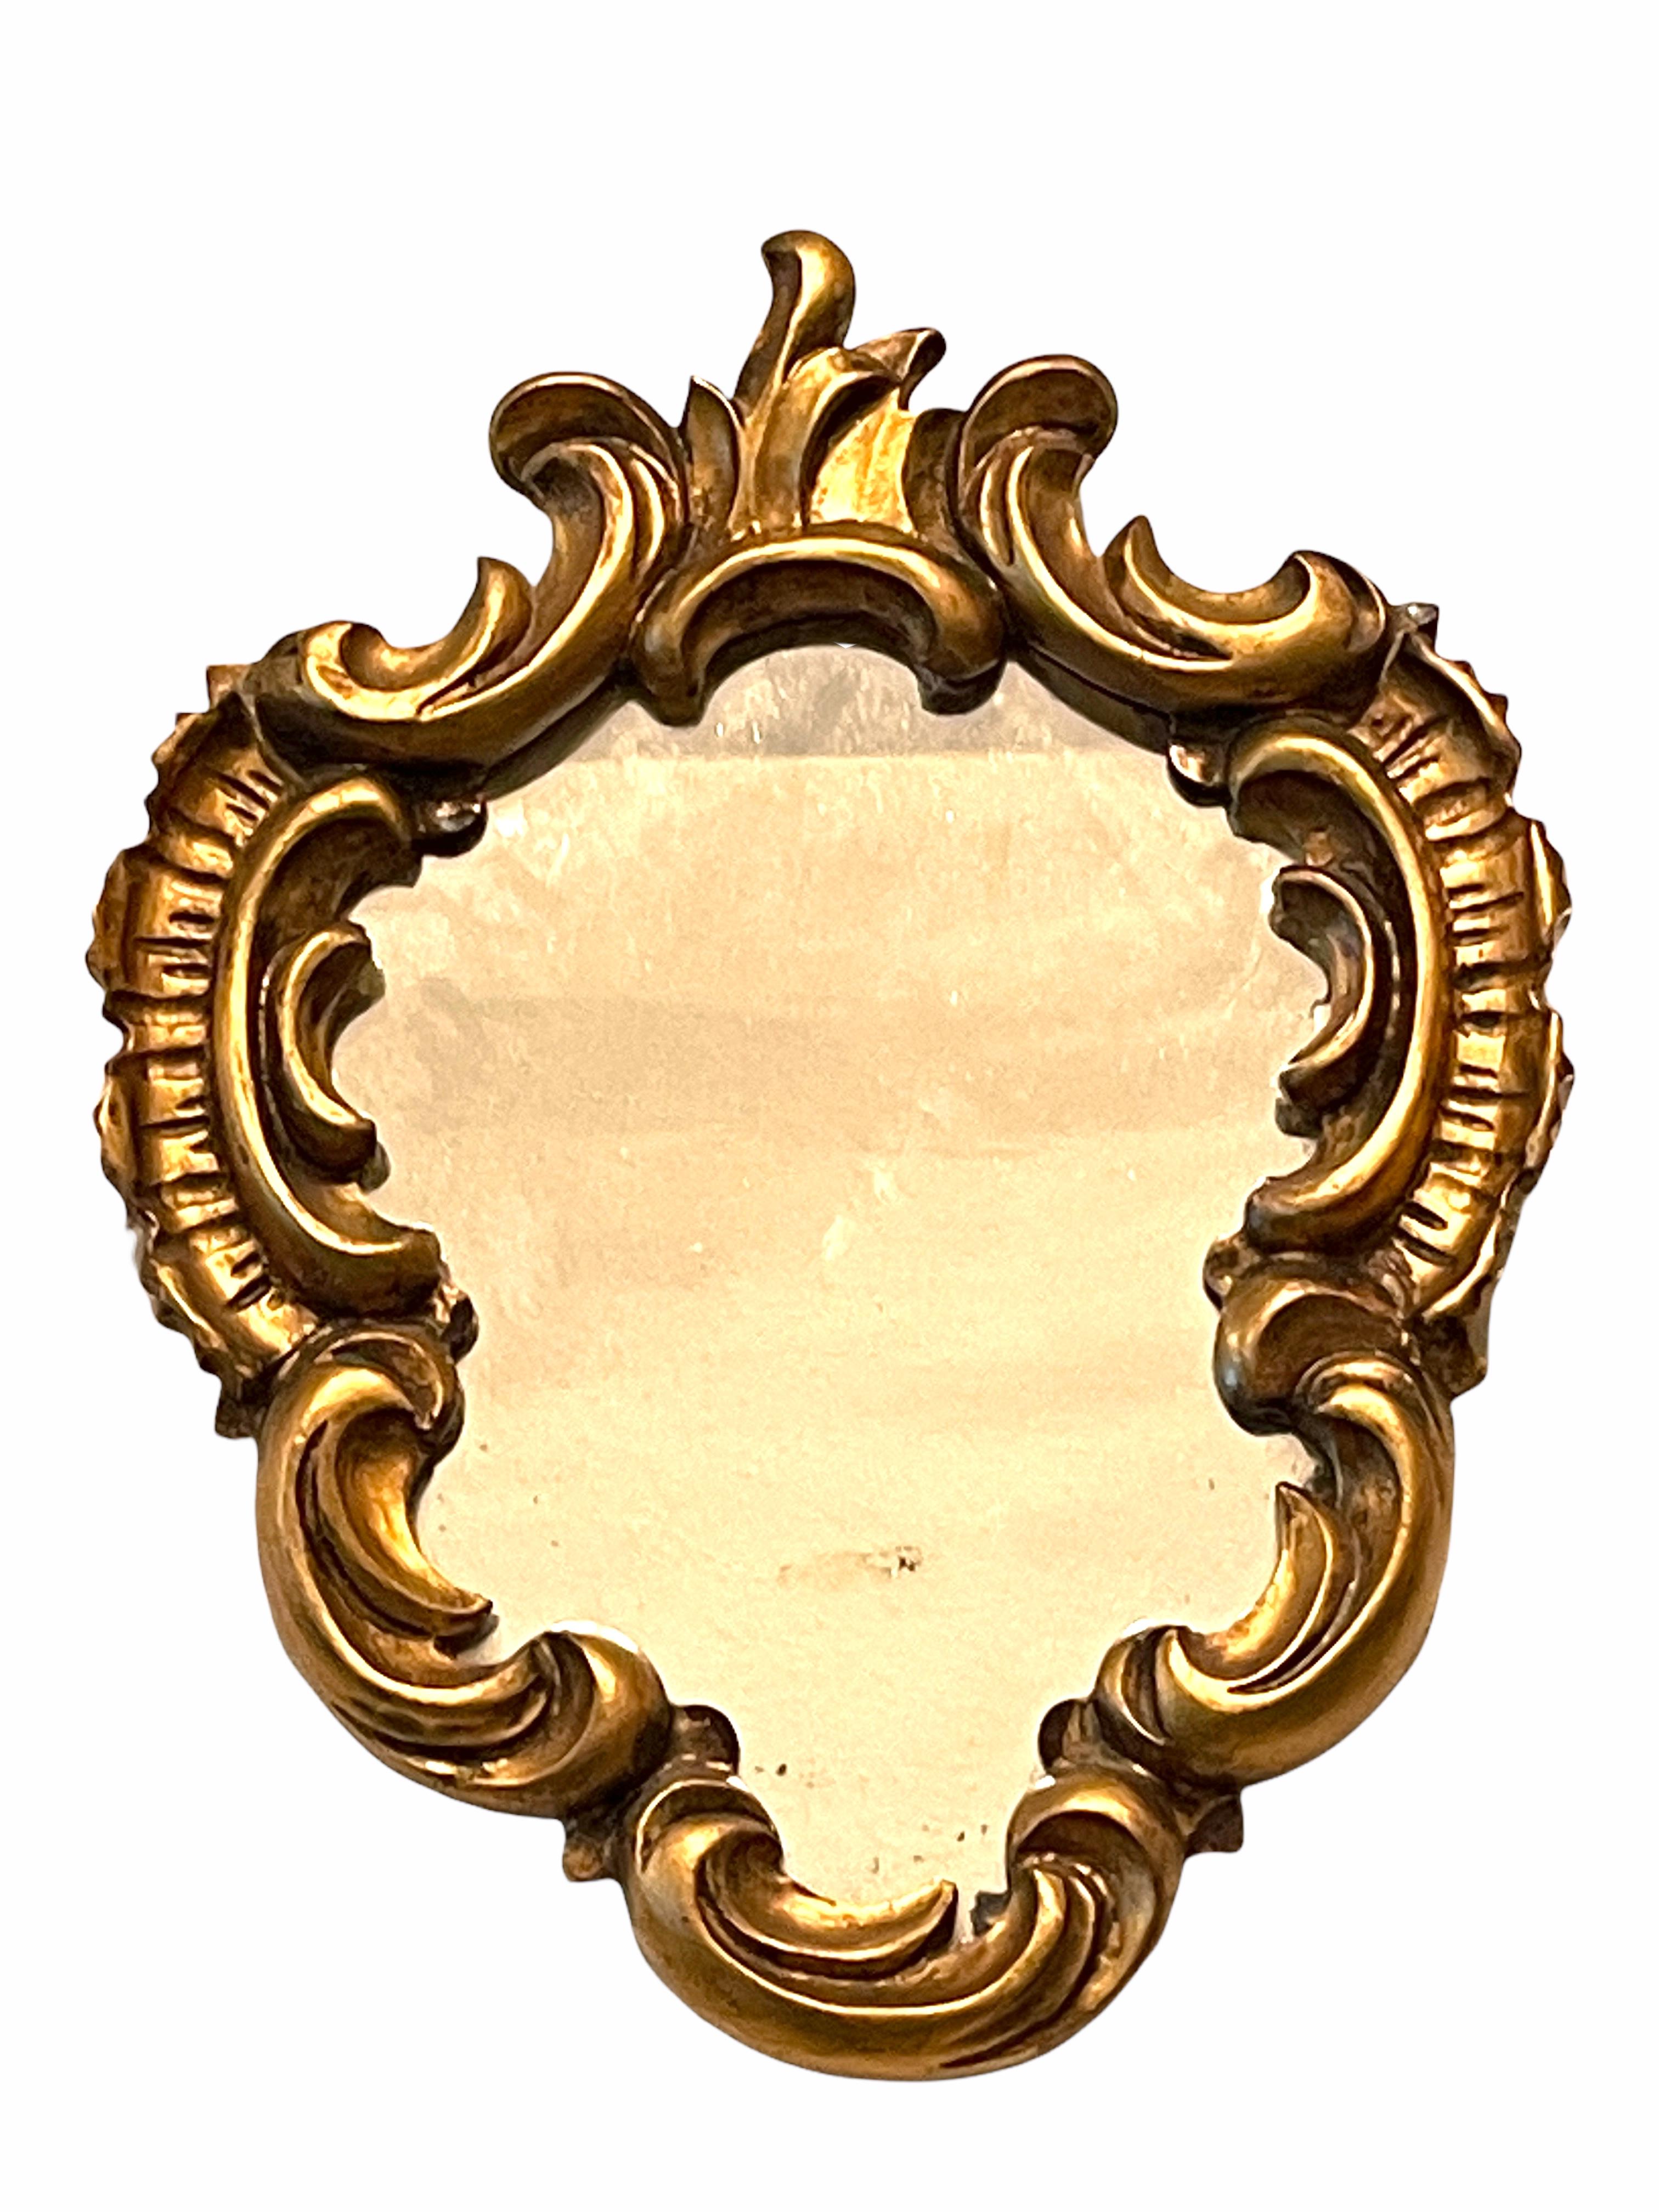 Ein wunderschöner Spiegel aus Keramik. Hergestellt aus vergoldetem Holz und Komposition. Eine schöne Ergänzung für jeden Raum.